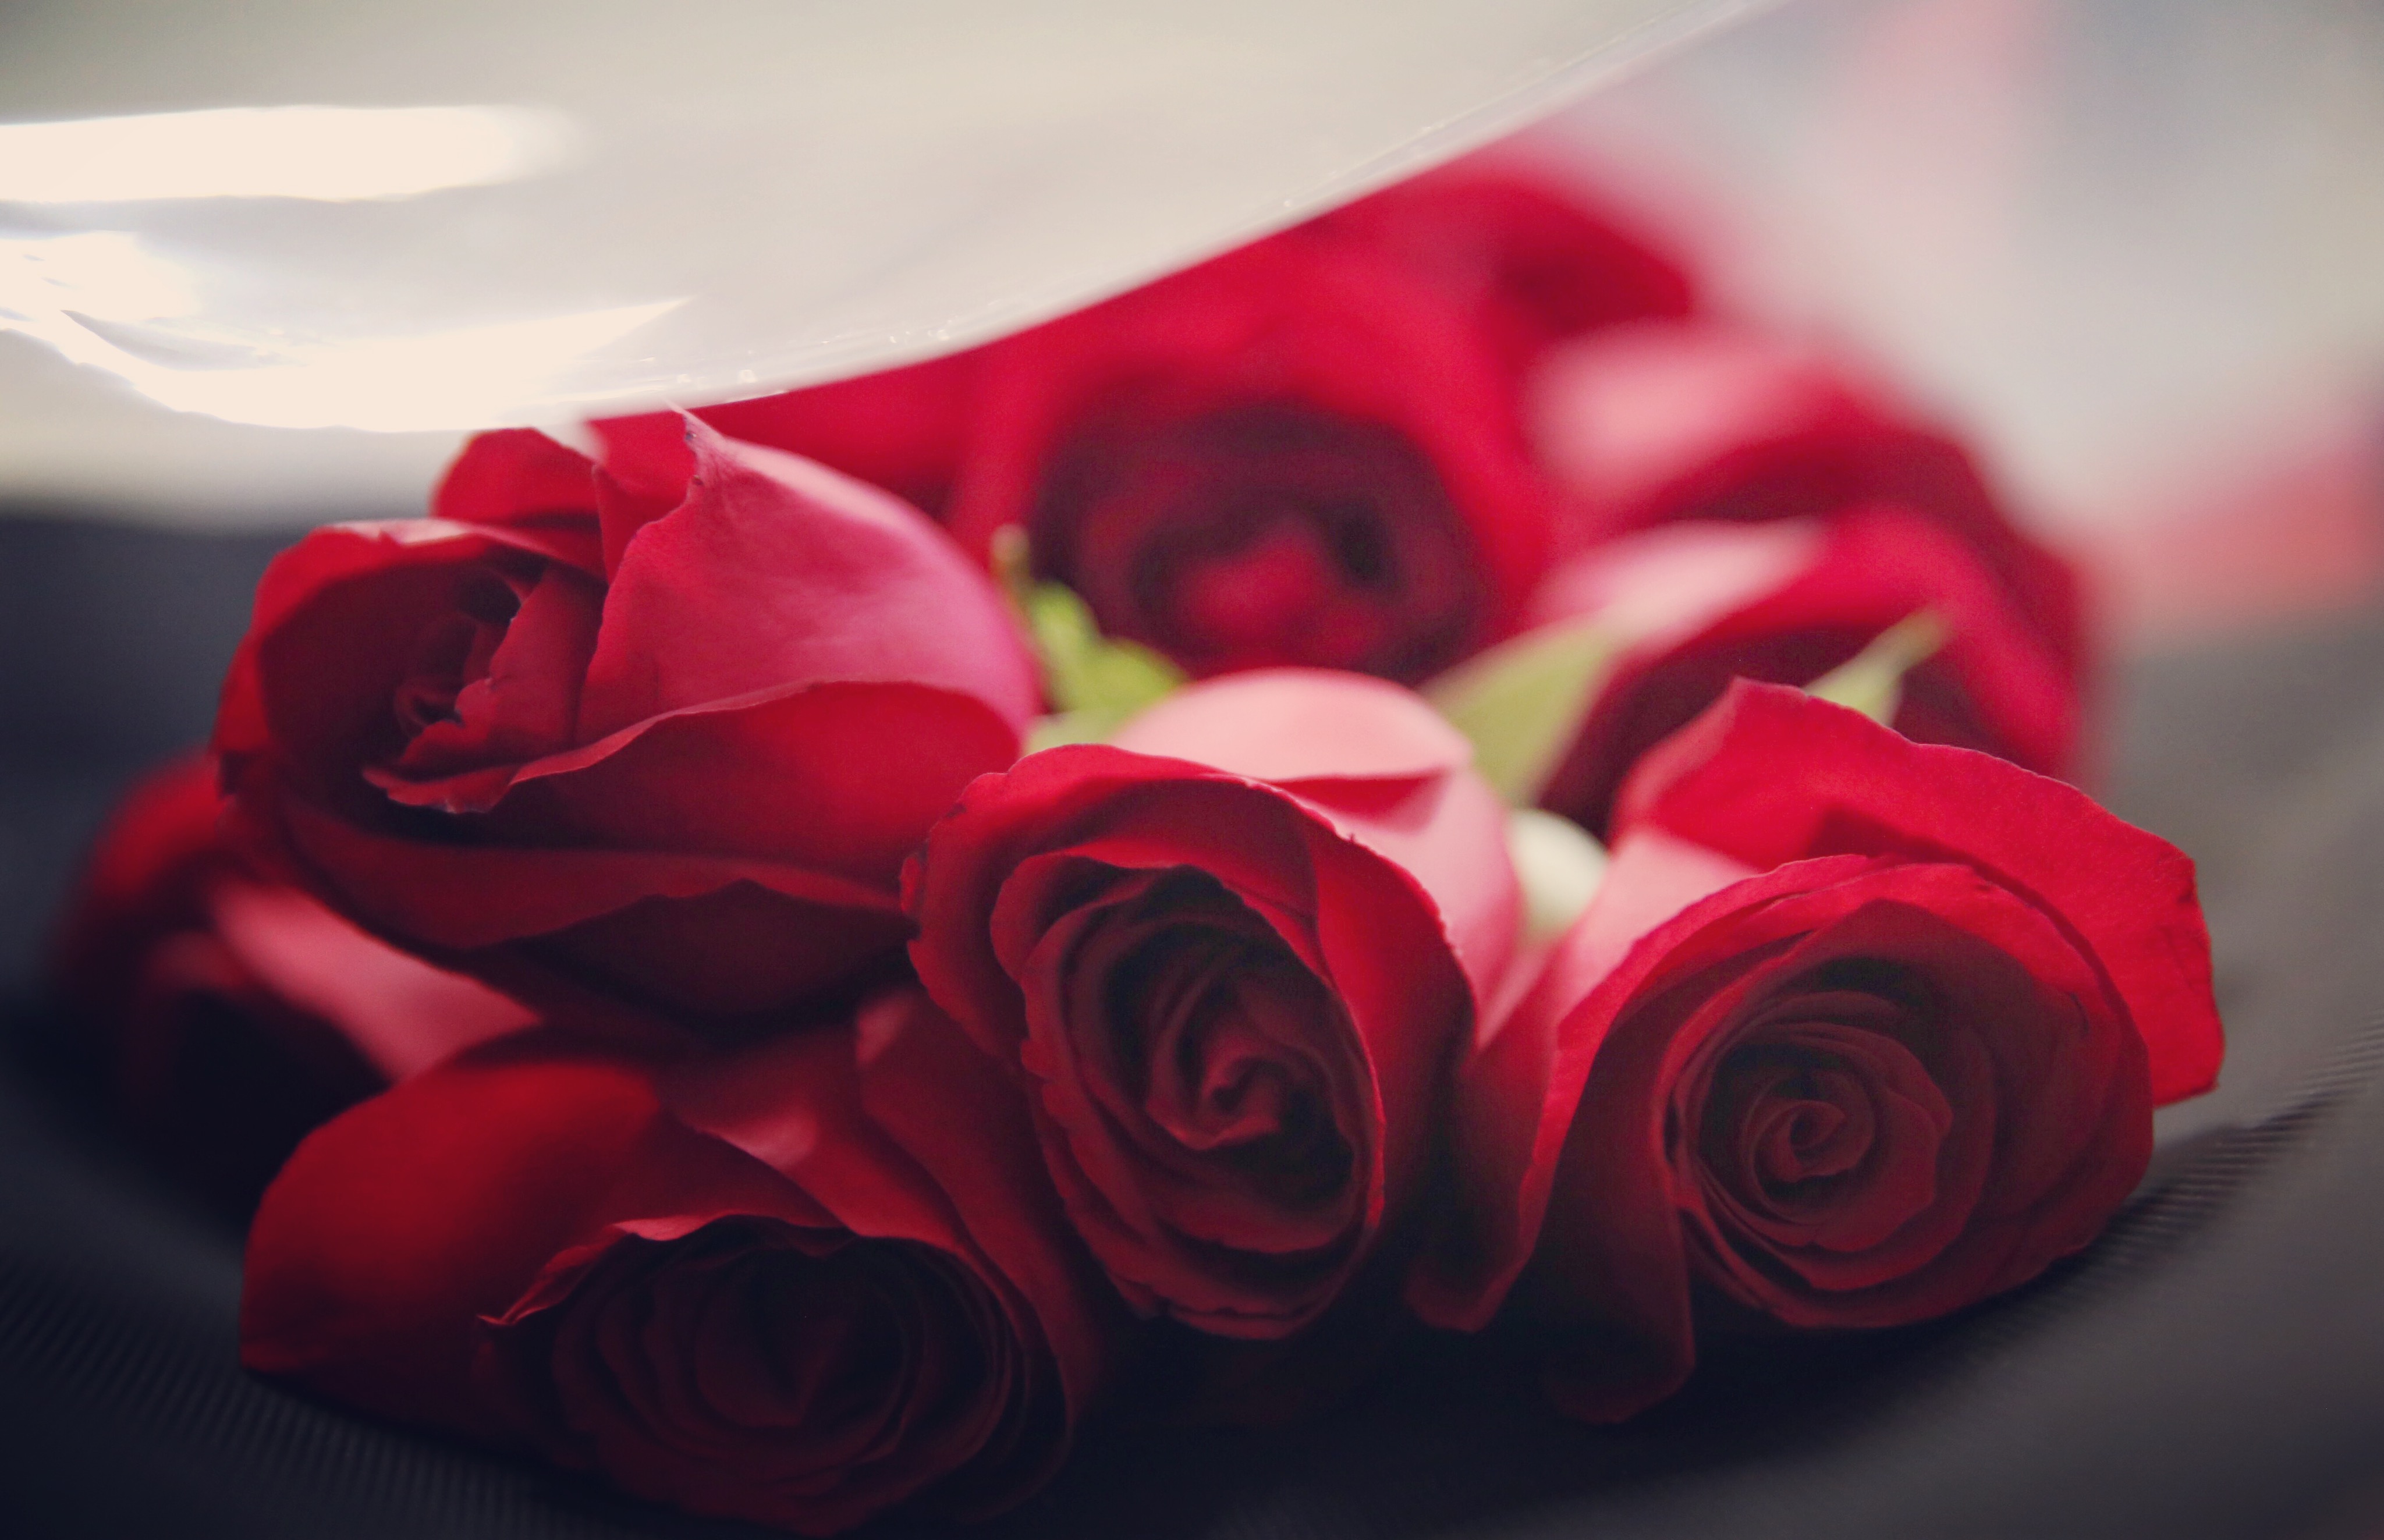 Hoa hồng đỏ là loài hoa được ưa chuộng nhất thế giới